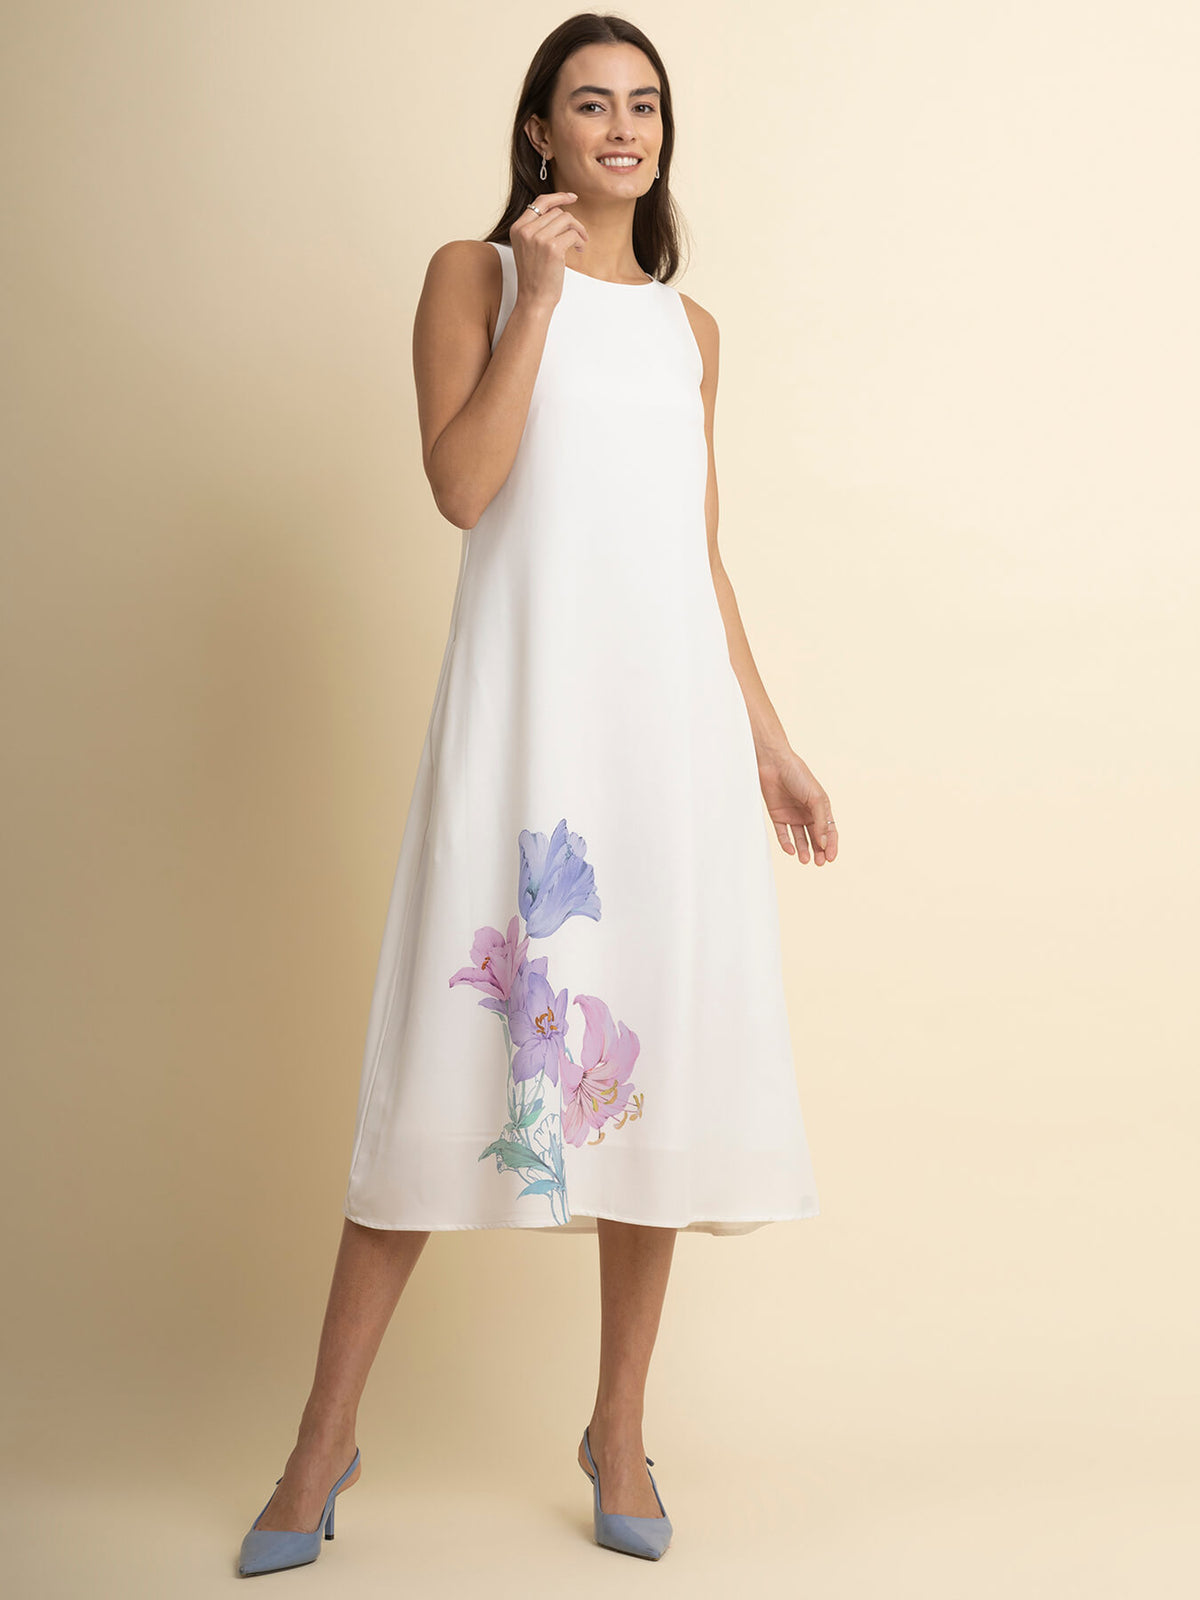 Floral Print A-Line Dress - White